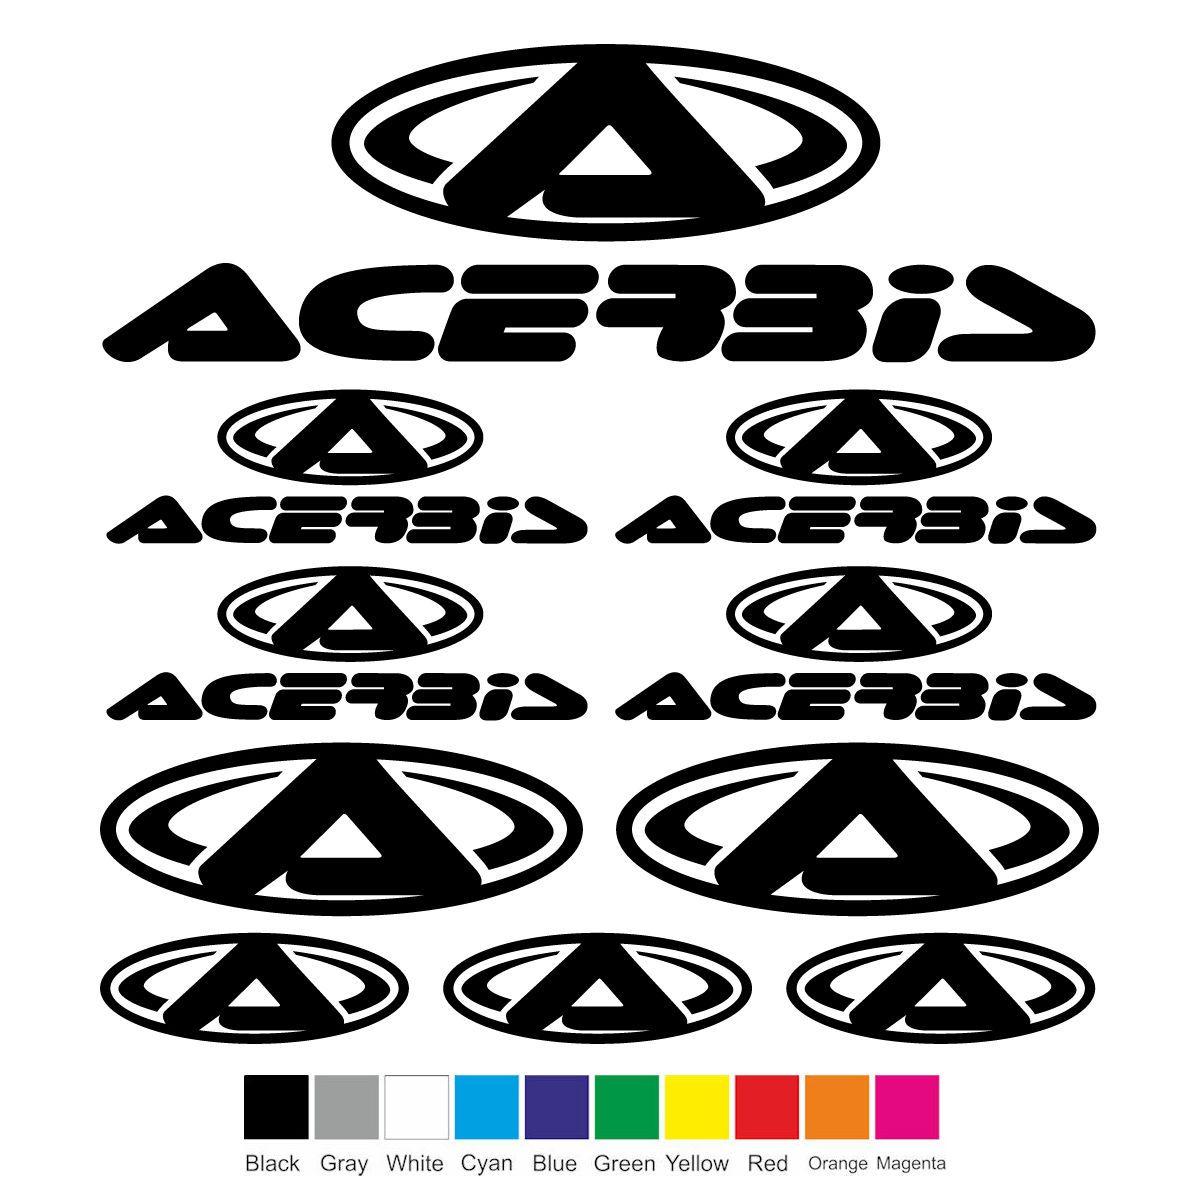 Acerbis Logo - Details about ACERBIS Vinyl Decal Sheet Sticker Motorcycle Graphic Set Logo  Adhesive Kit 10Pcs